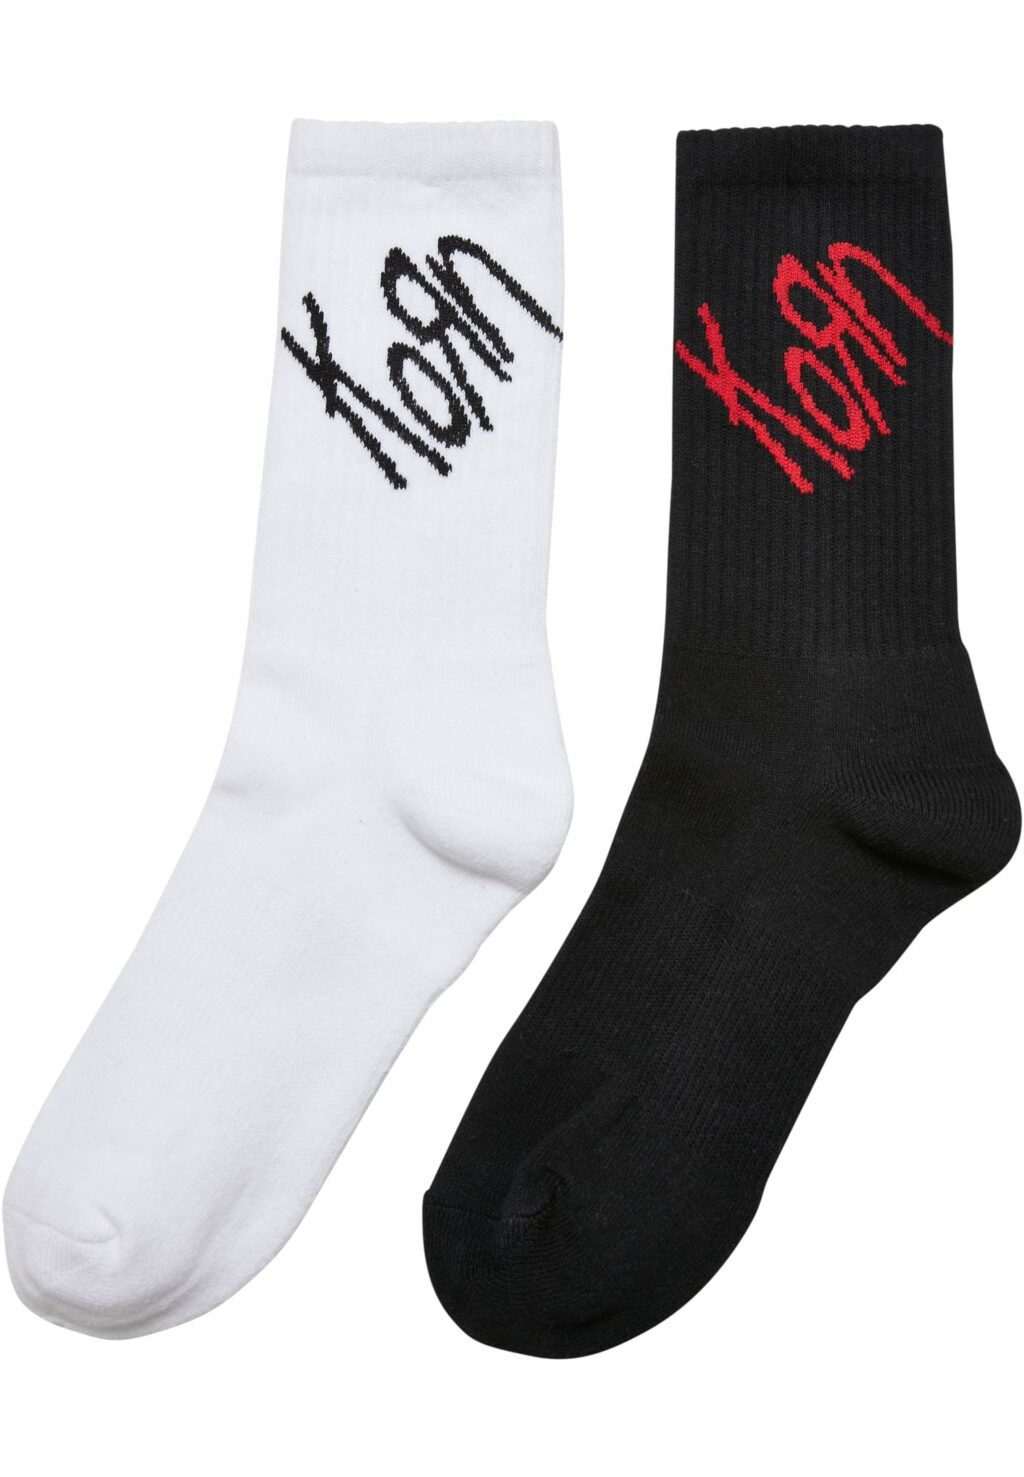 Korn Socks 2-Pack black/white MC813